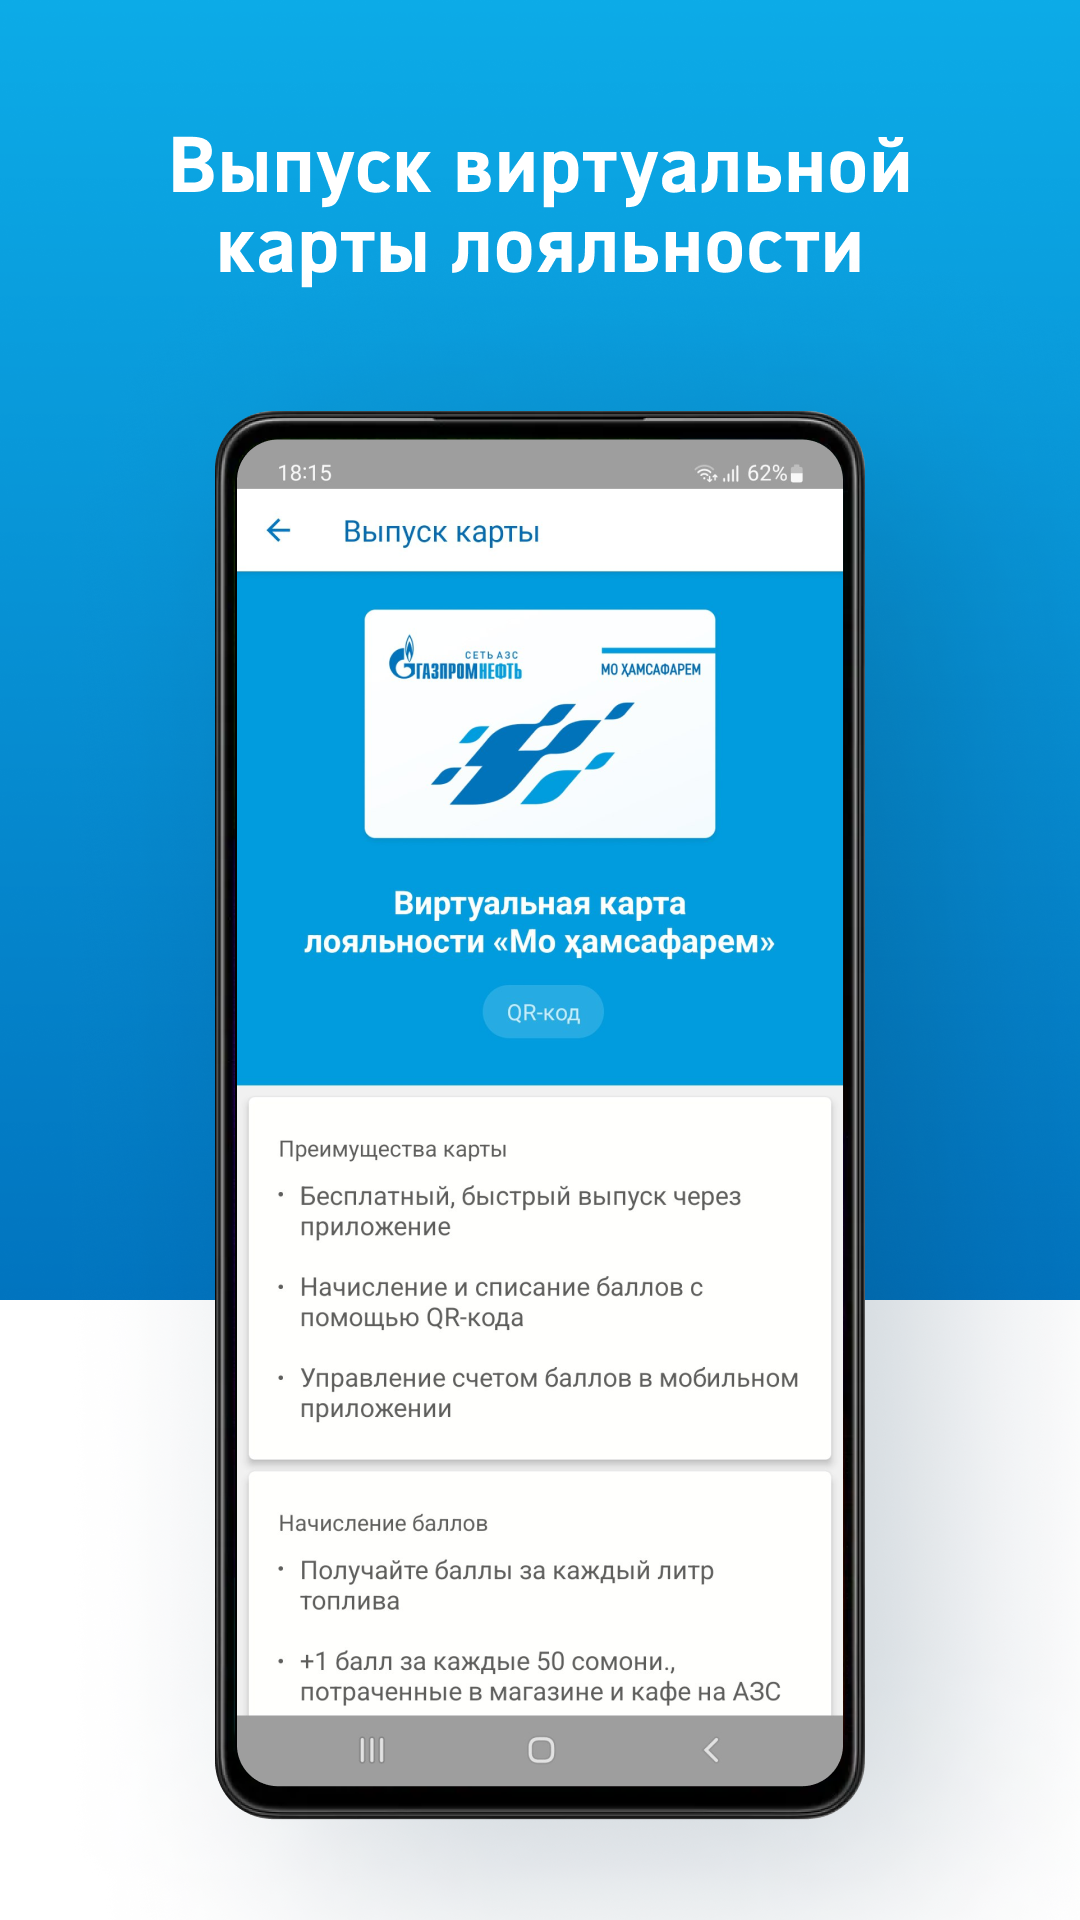 Приложение таджикский. Приложение Газпромнефть. Приложение Газпромнефть для андроид. АЗС Газпромнефть Таджикистан.